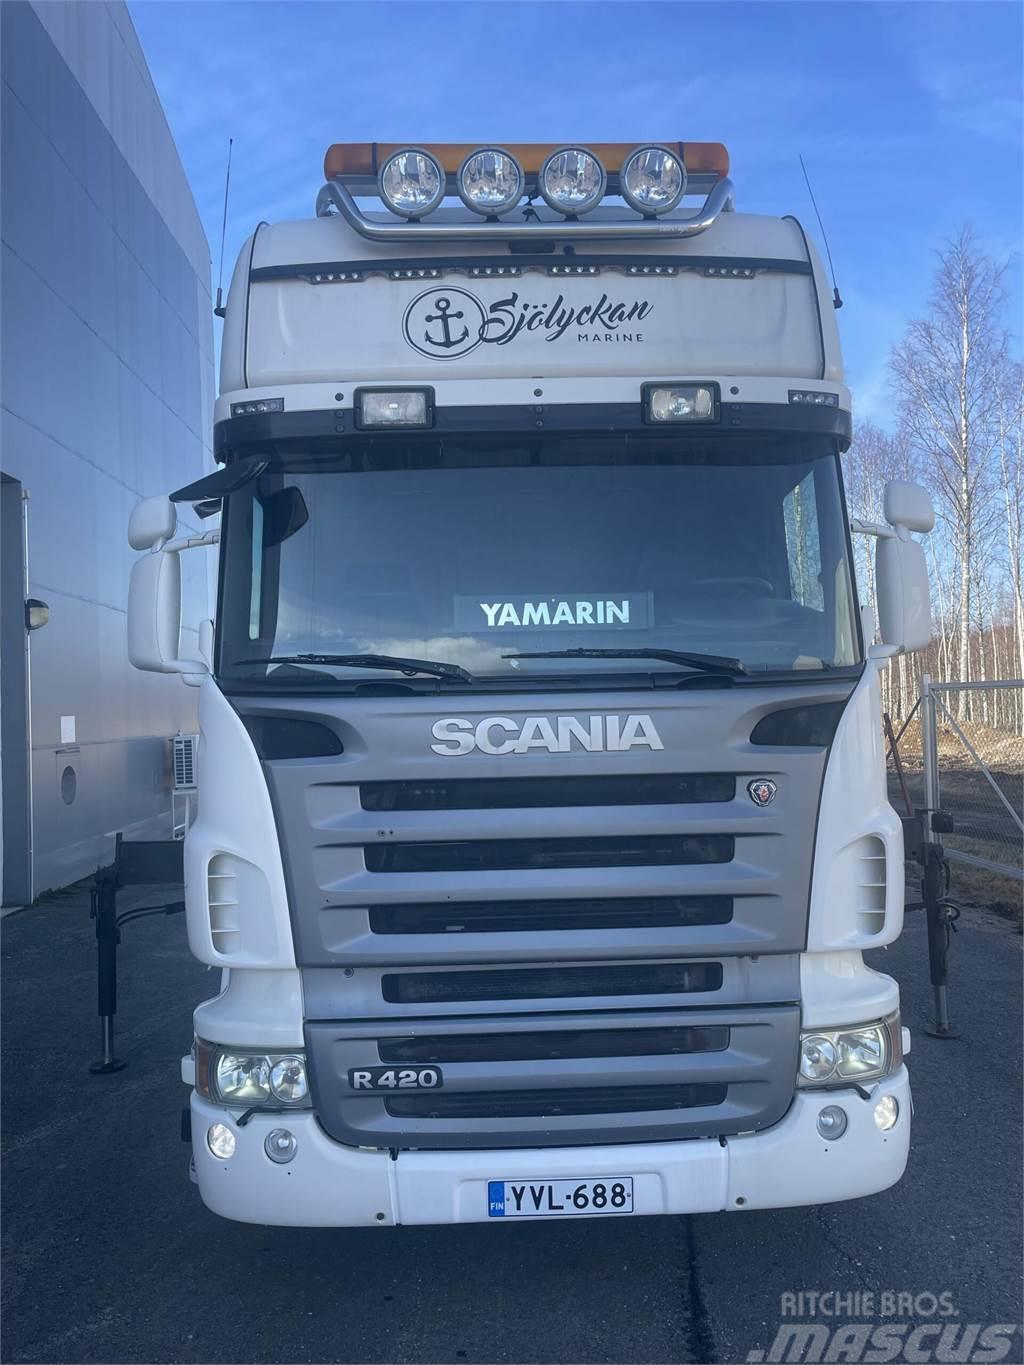 Scania R 420 4x2-3700 Topline + PM 12.5 S nosturi radioll Autojeřáby, hydraulické ruky